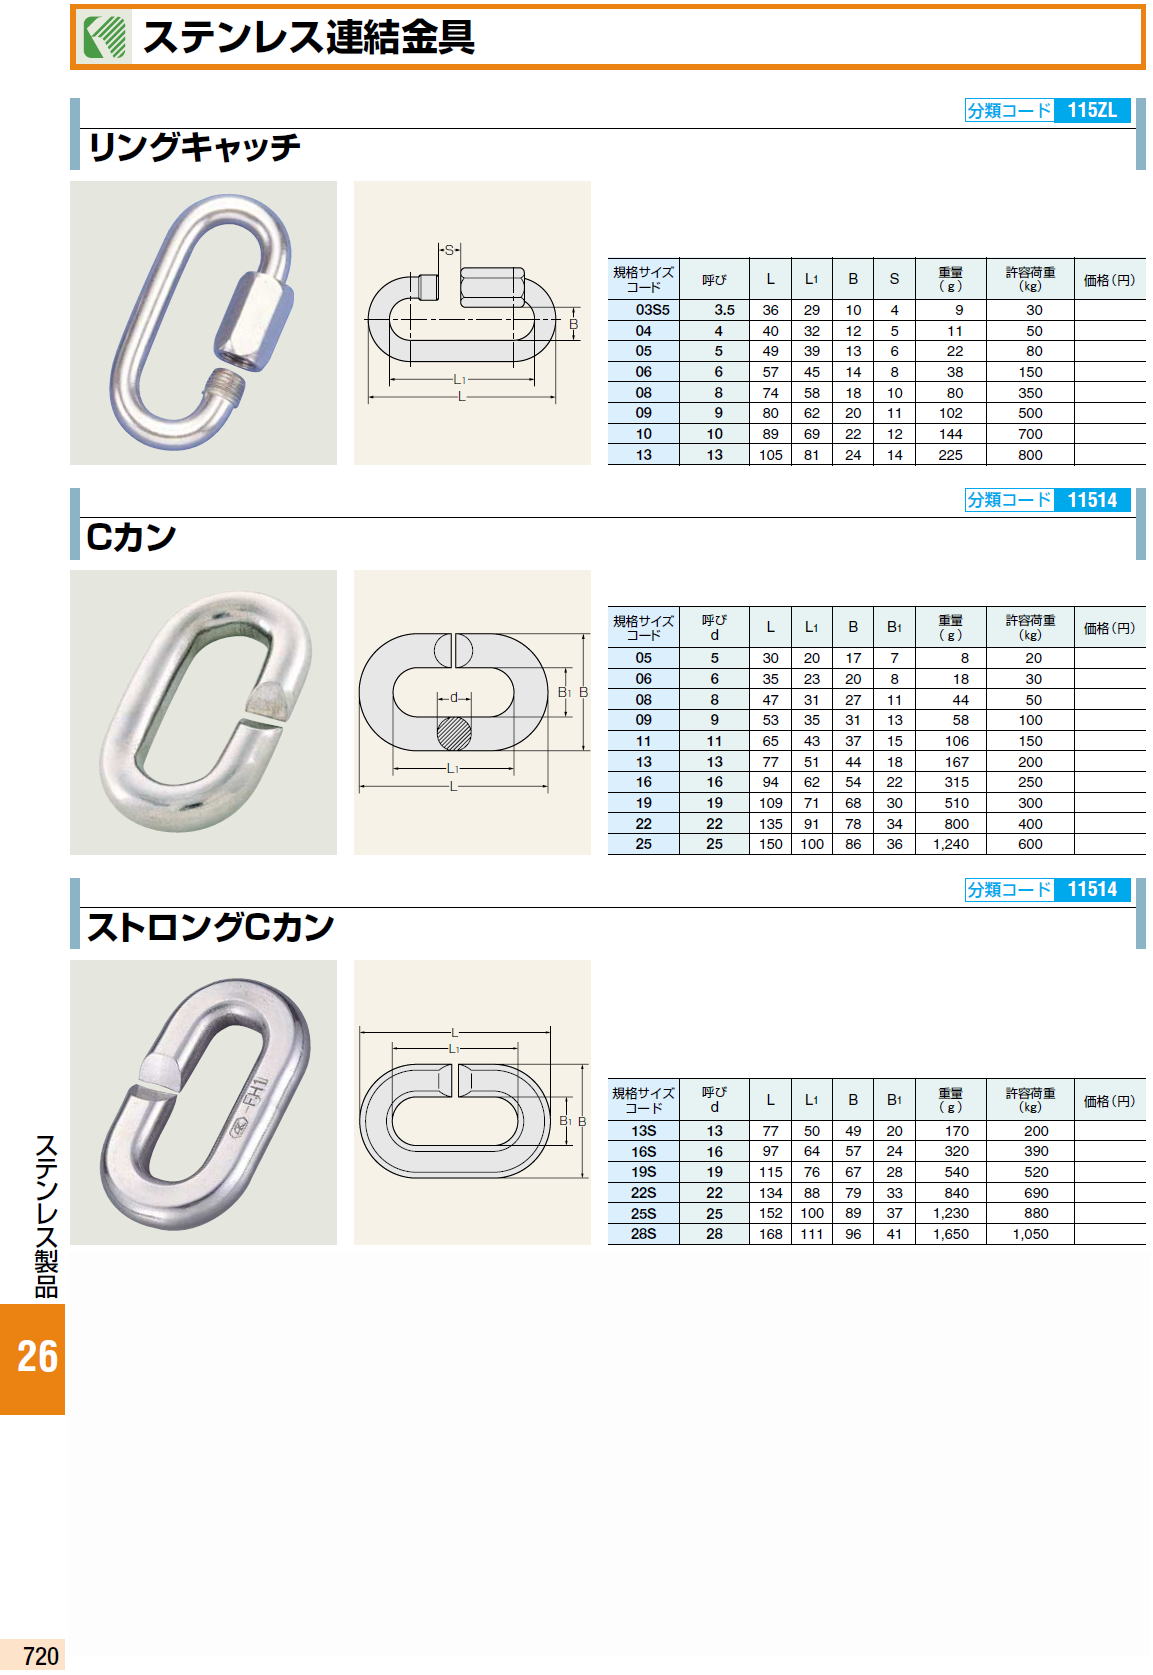 ステンレス連結金具 / リングキャッチ/ Cカン / ストロングCカン / サメカン（環つきCカン）